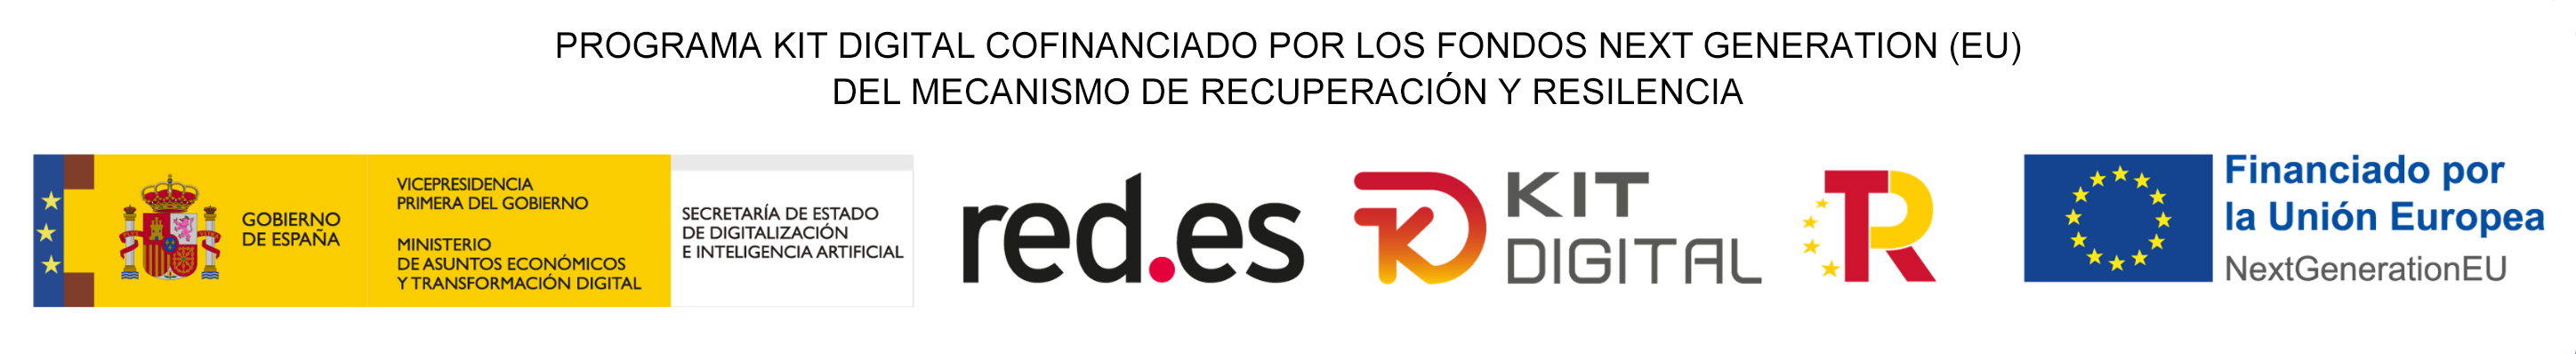 Logotipos del Gobierno de España, logotipo de red.es, logotipo de kit digital y logotipo de financiado por la Unión Europea.